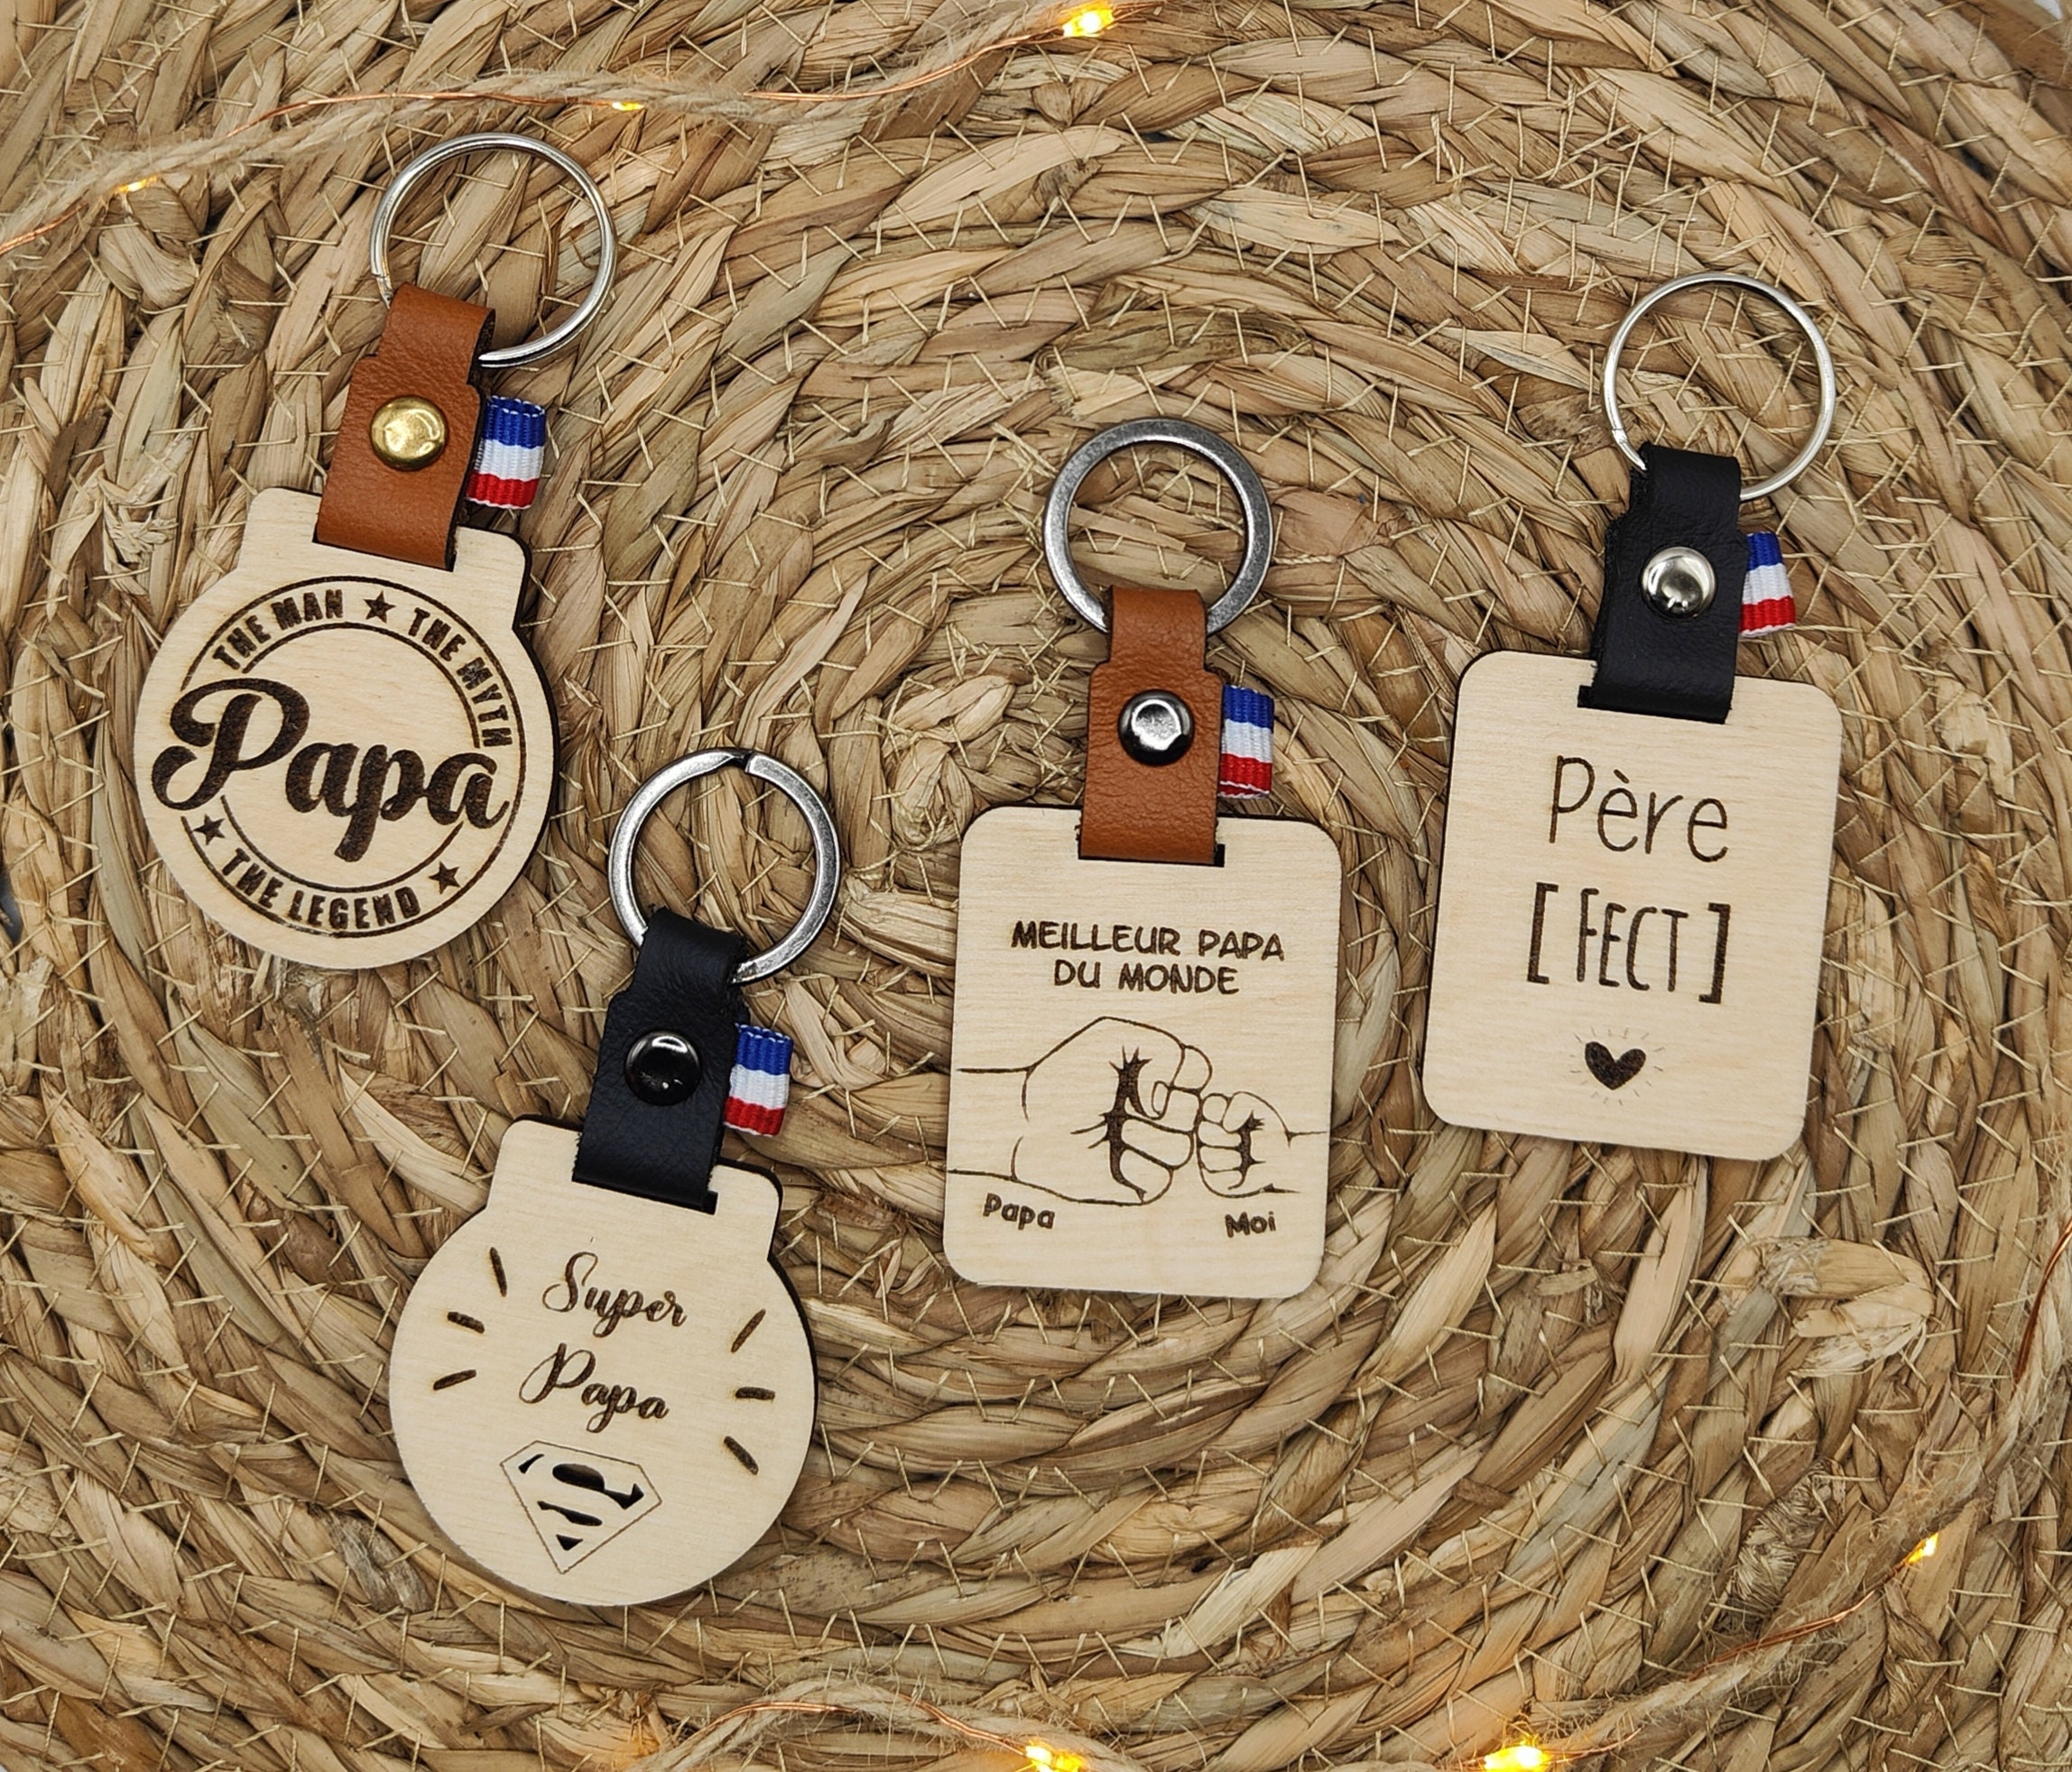 Porte-clés personnalisé pour femme, porte-clé de voiture pour elle, cadeau  pour maman, porte-clé occidental, bracelet jonc en silicone, imprimé animal  -  France